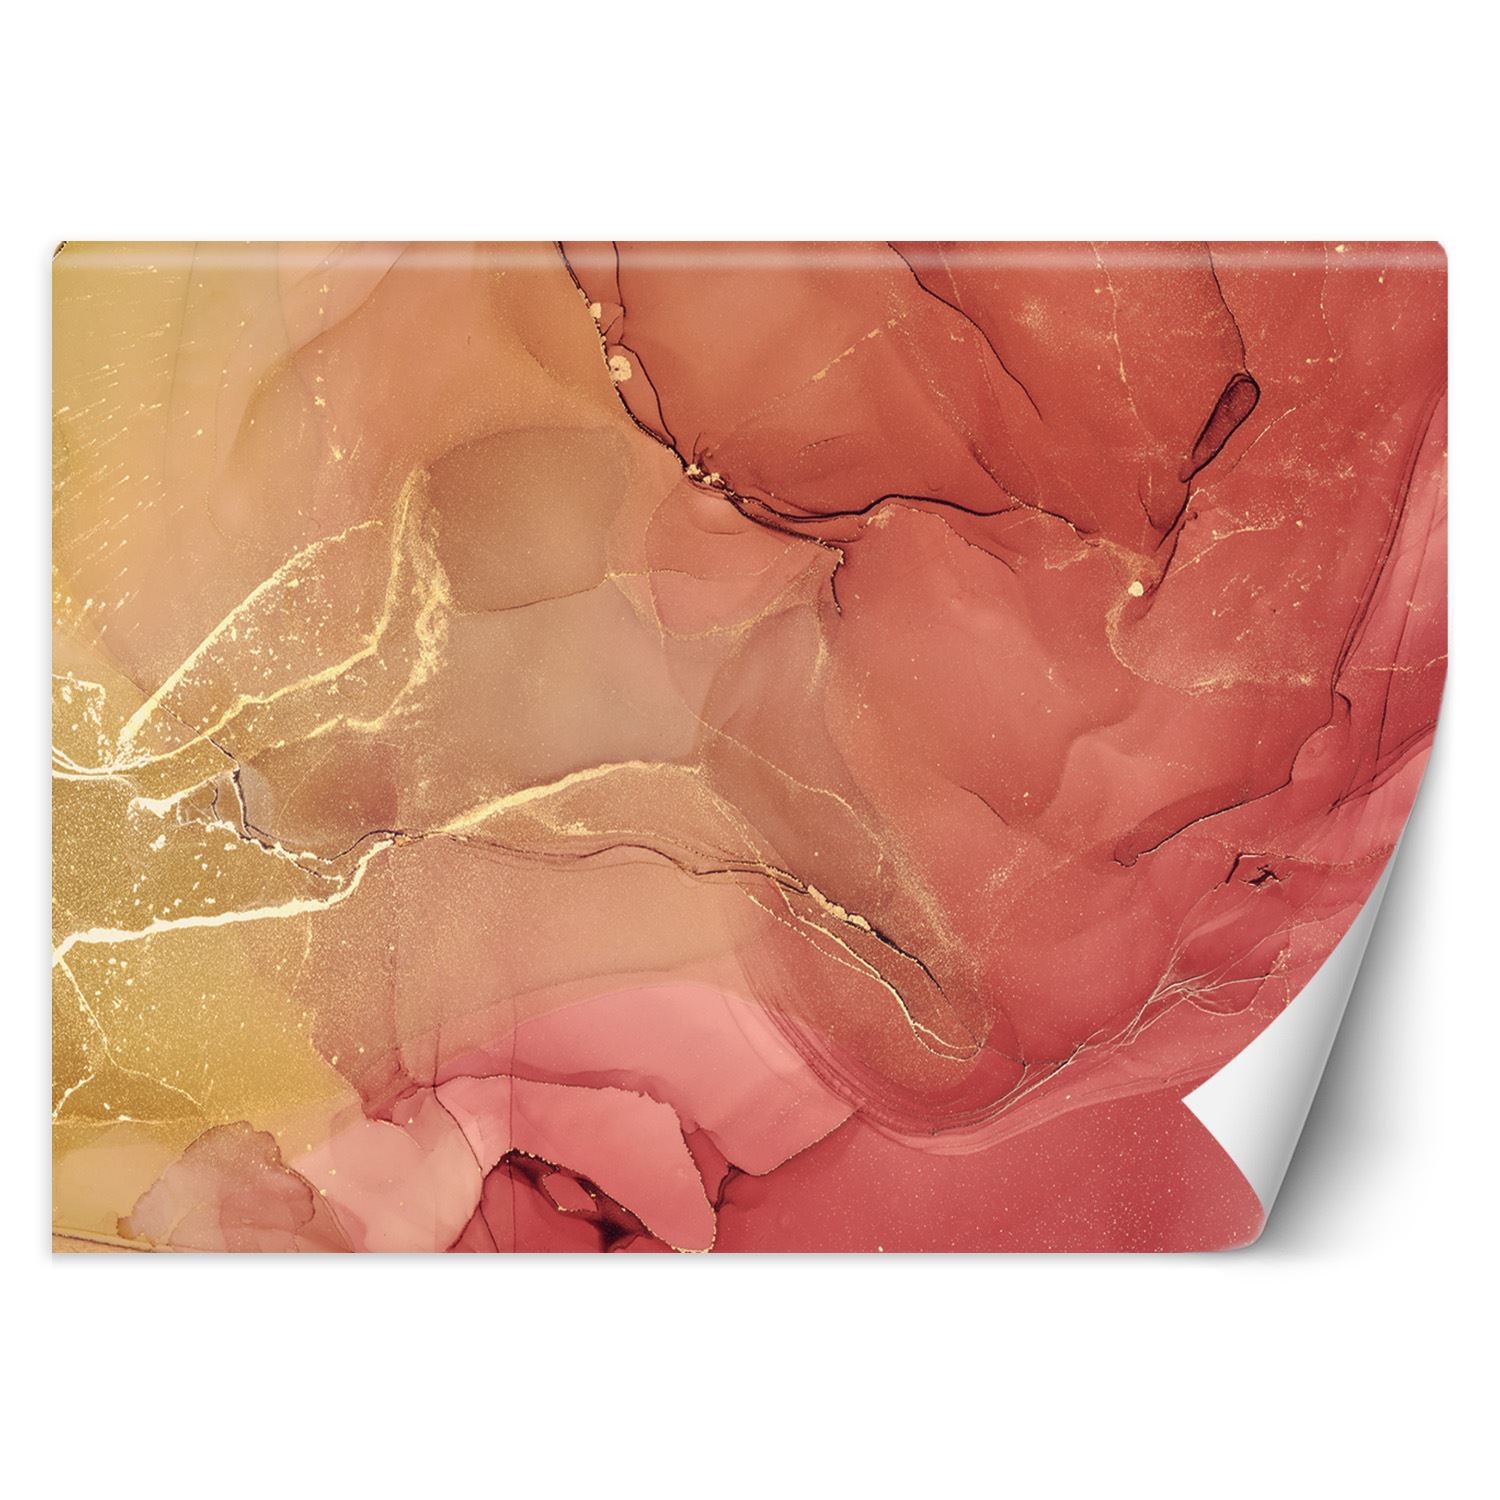 Trend24 – Behang – Abstract In Delicate Roze – Vliesbehang – Fotobehang 3D – Behang Woonkamer – 400x280x2 cm – Incl. behanglijm